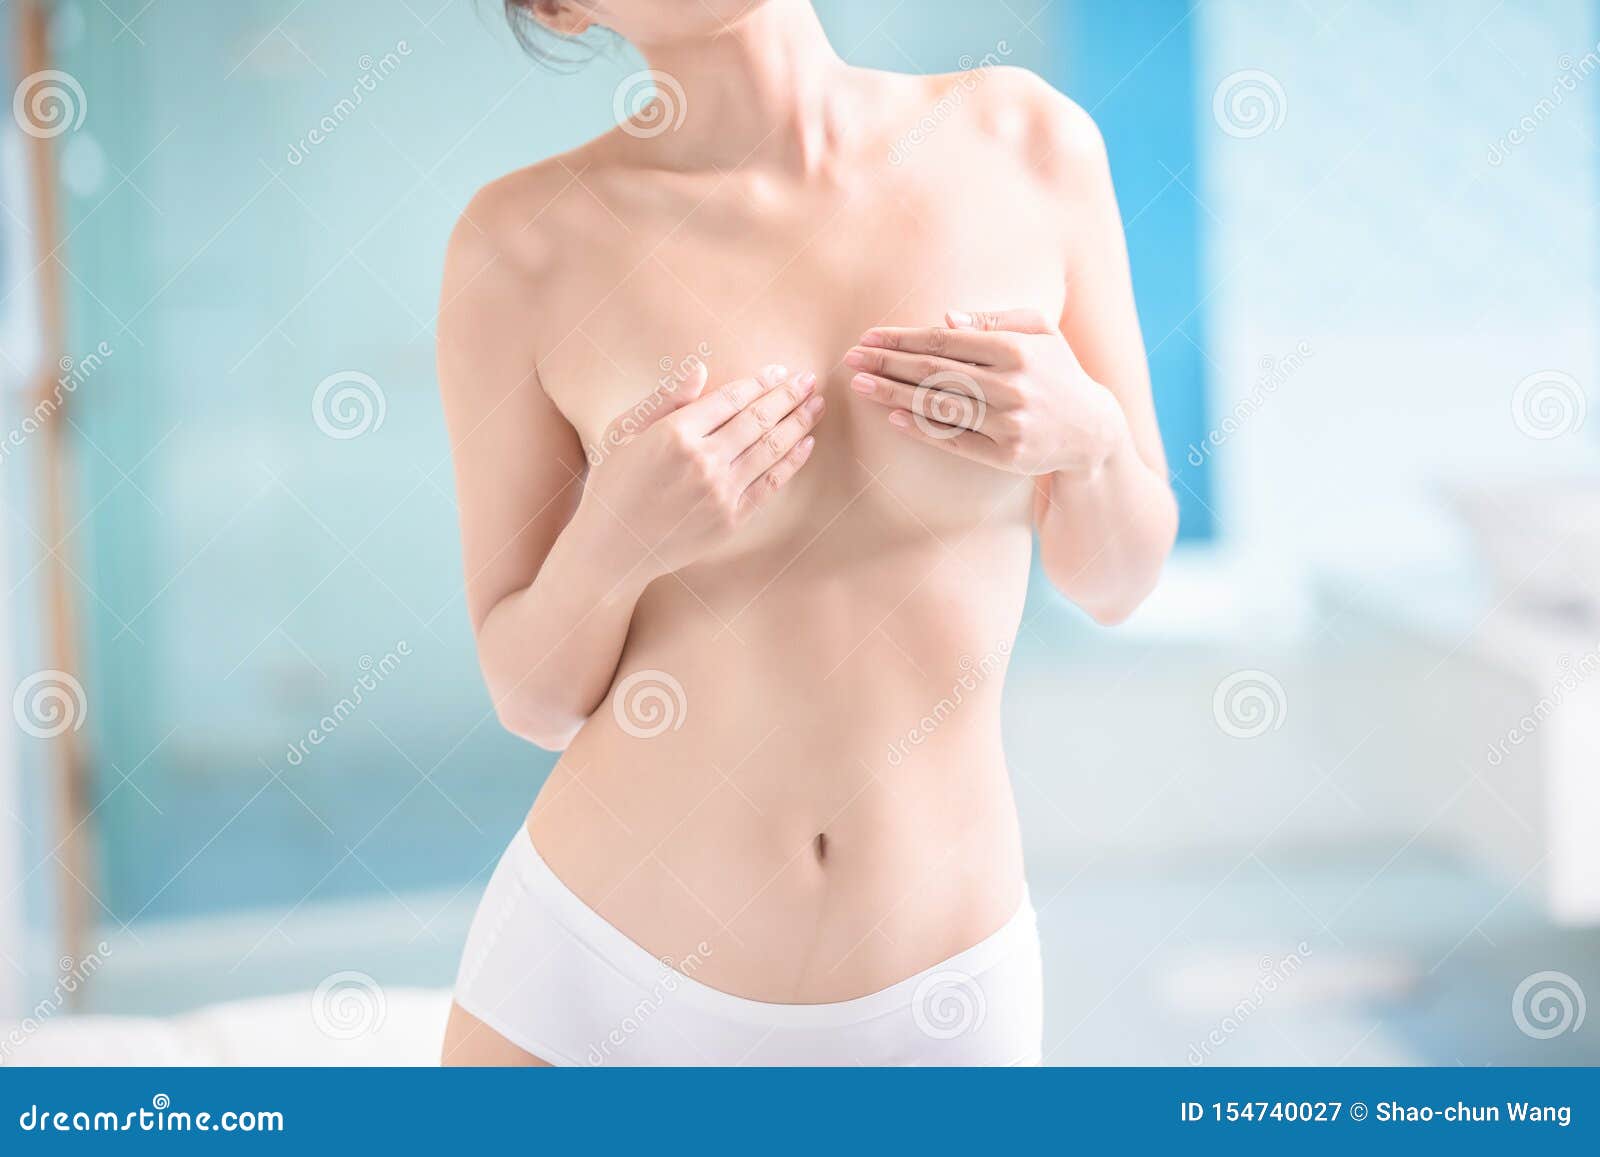 форум женской груди фото 69